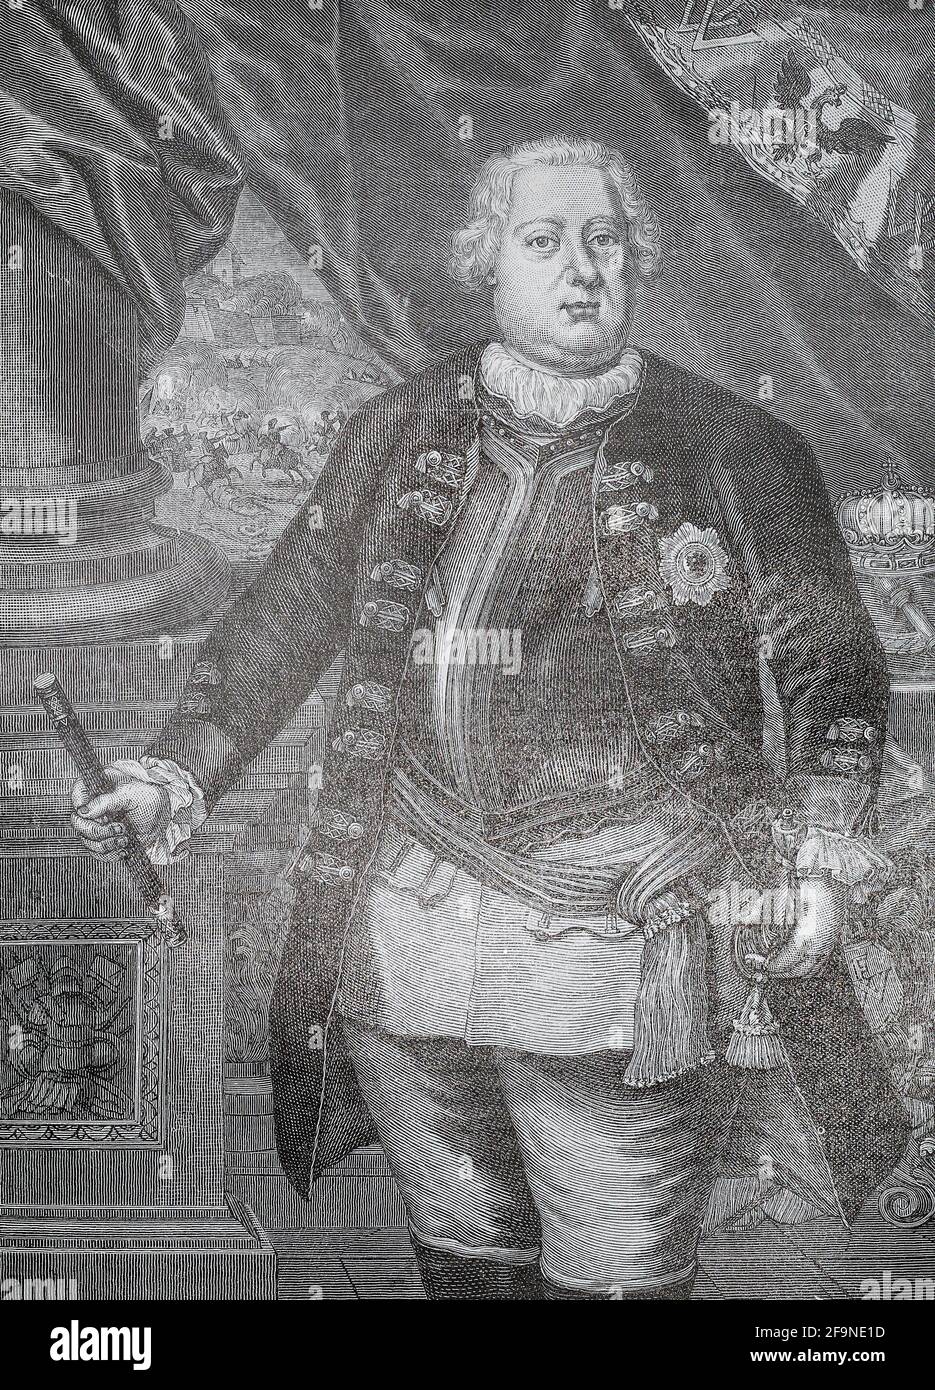 Frederick William I conocido como el 'Rey Soldado' fue el rey en Prusia y elector de Brandeburgo desde 1713 hasta su muerte en 1740, así como príncipe de Neuchâtel. Fue sucedido por su hijo, Frederick el Grande. Foto de stock